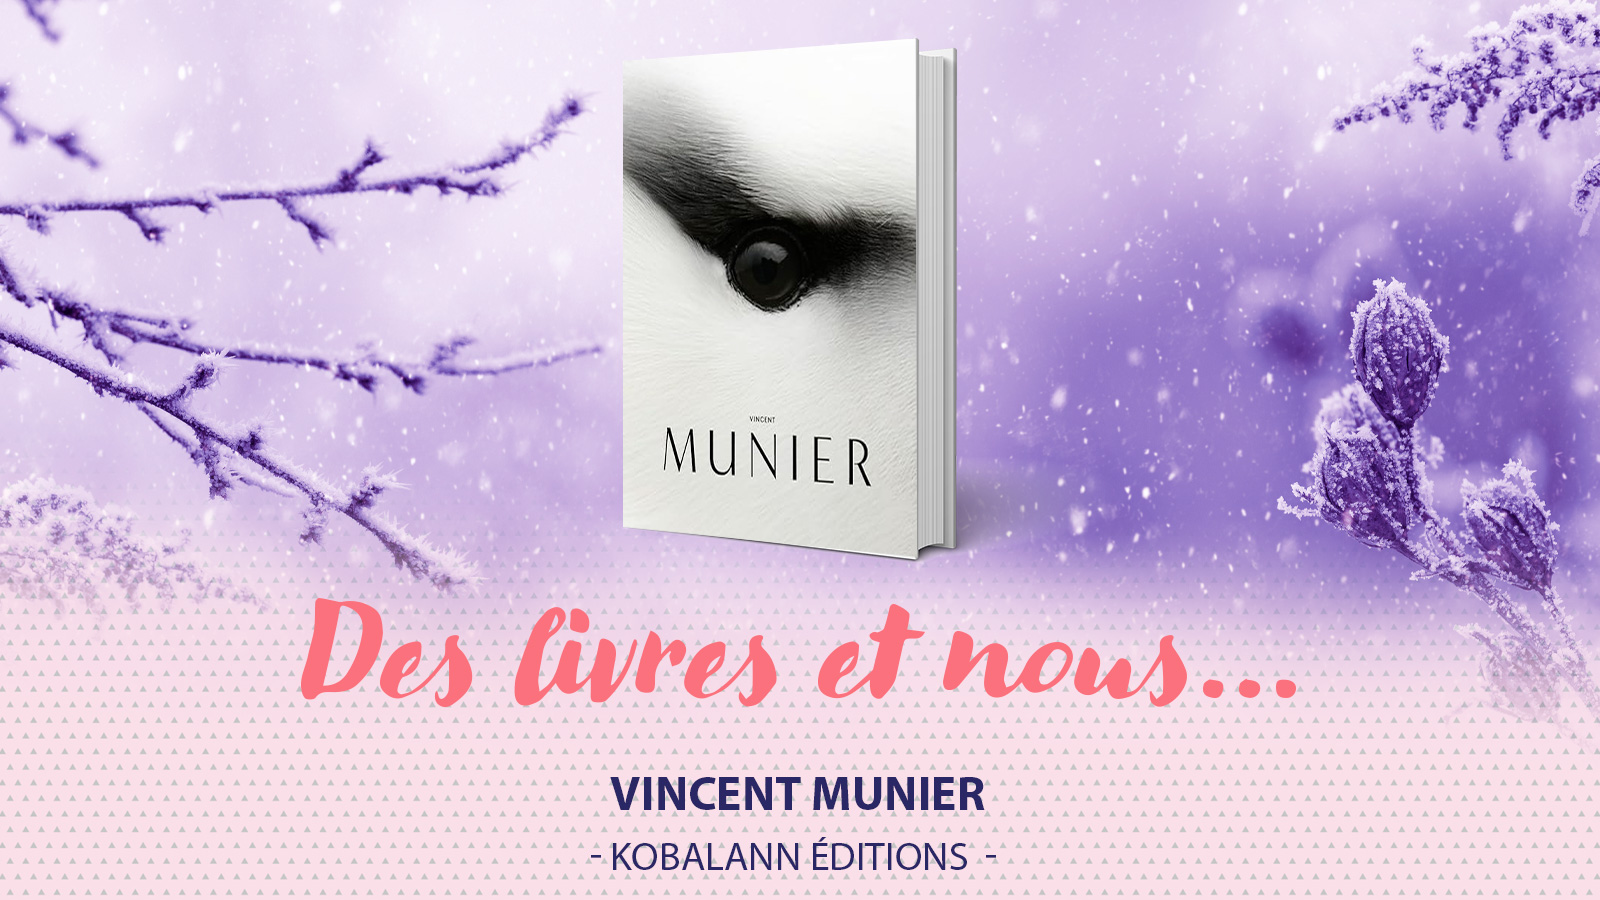 La première monographie de Vincent MUNIER